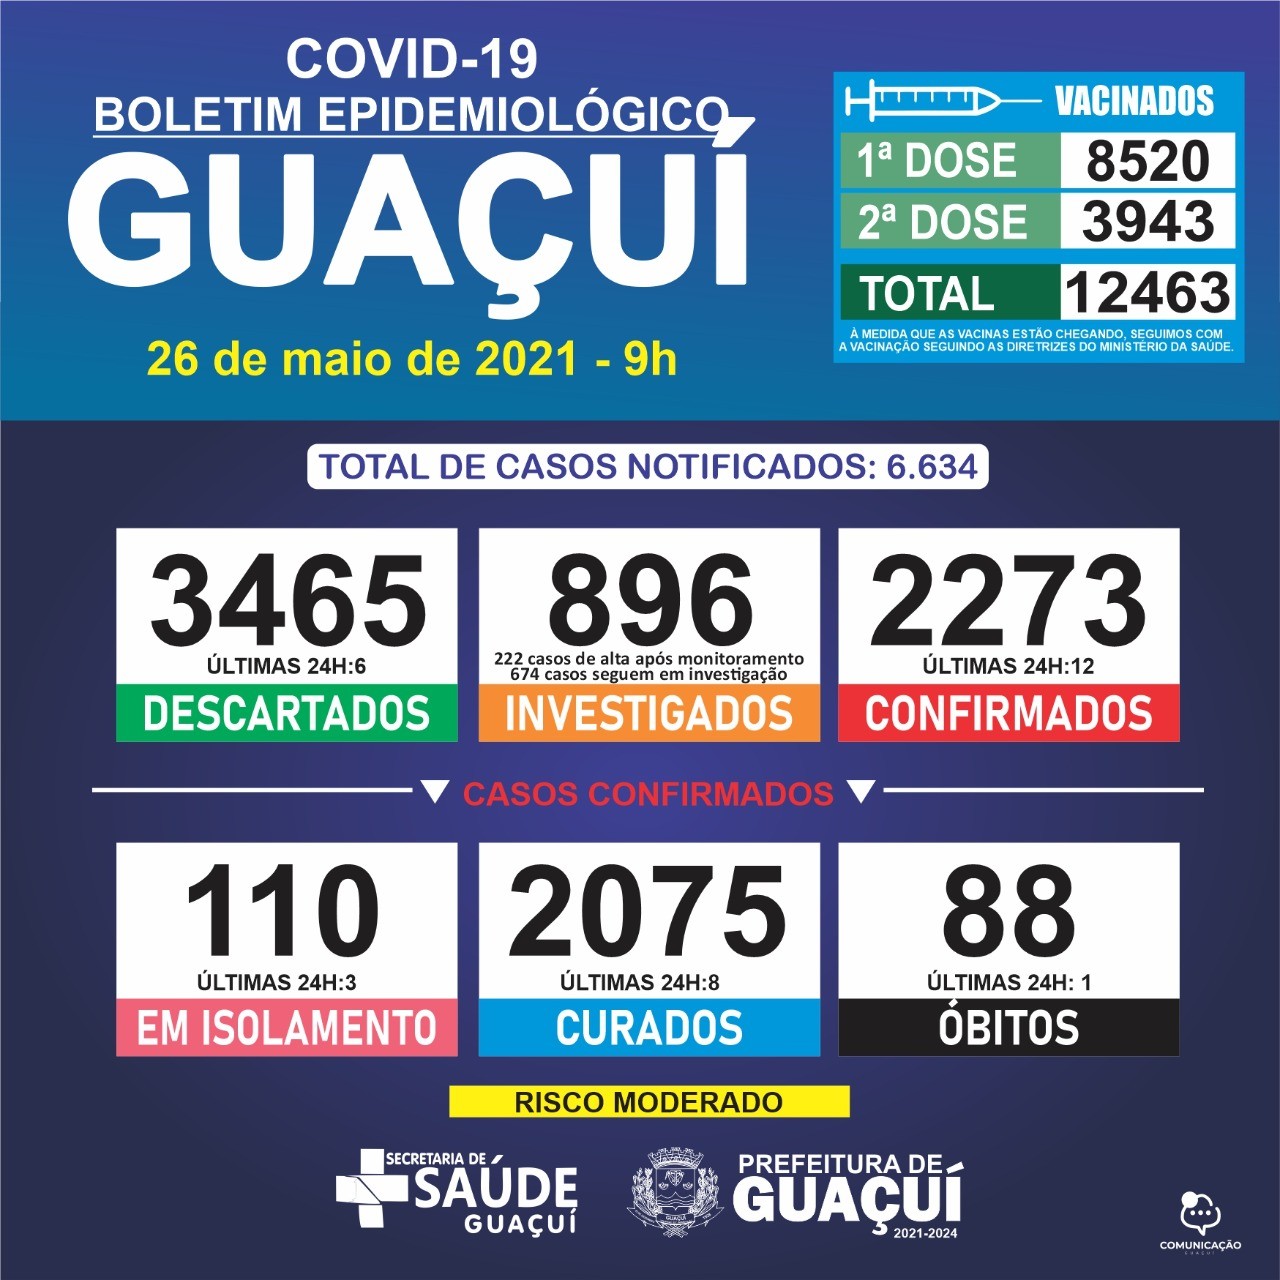 Boletim Epidemiológico 26/05/21: Guaçuí registra 1 óbito, 12 casos confirmados e 8 curados de Covid-19